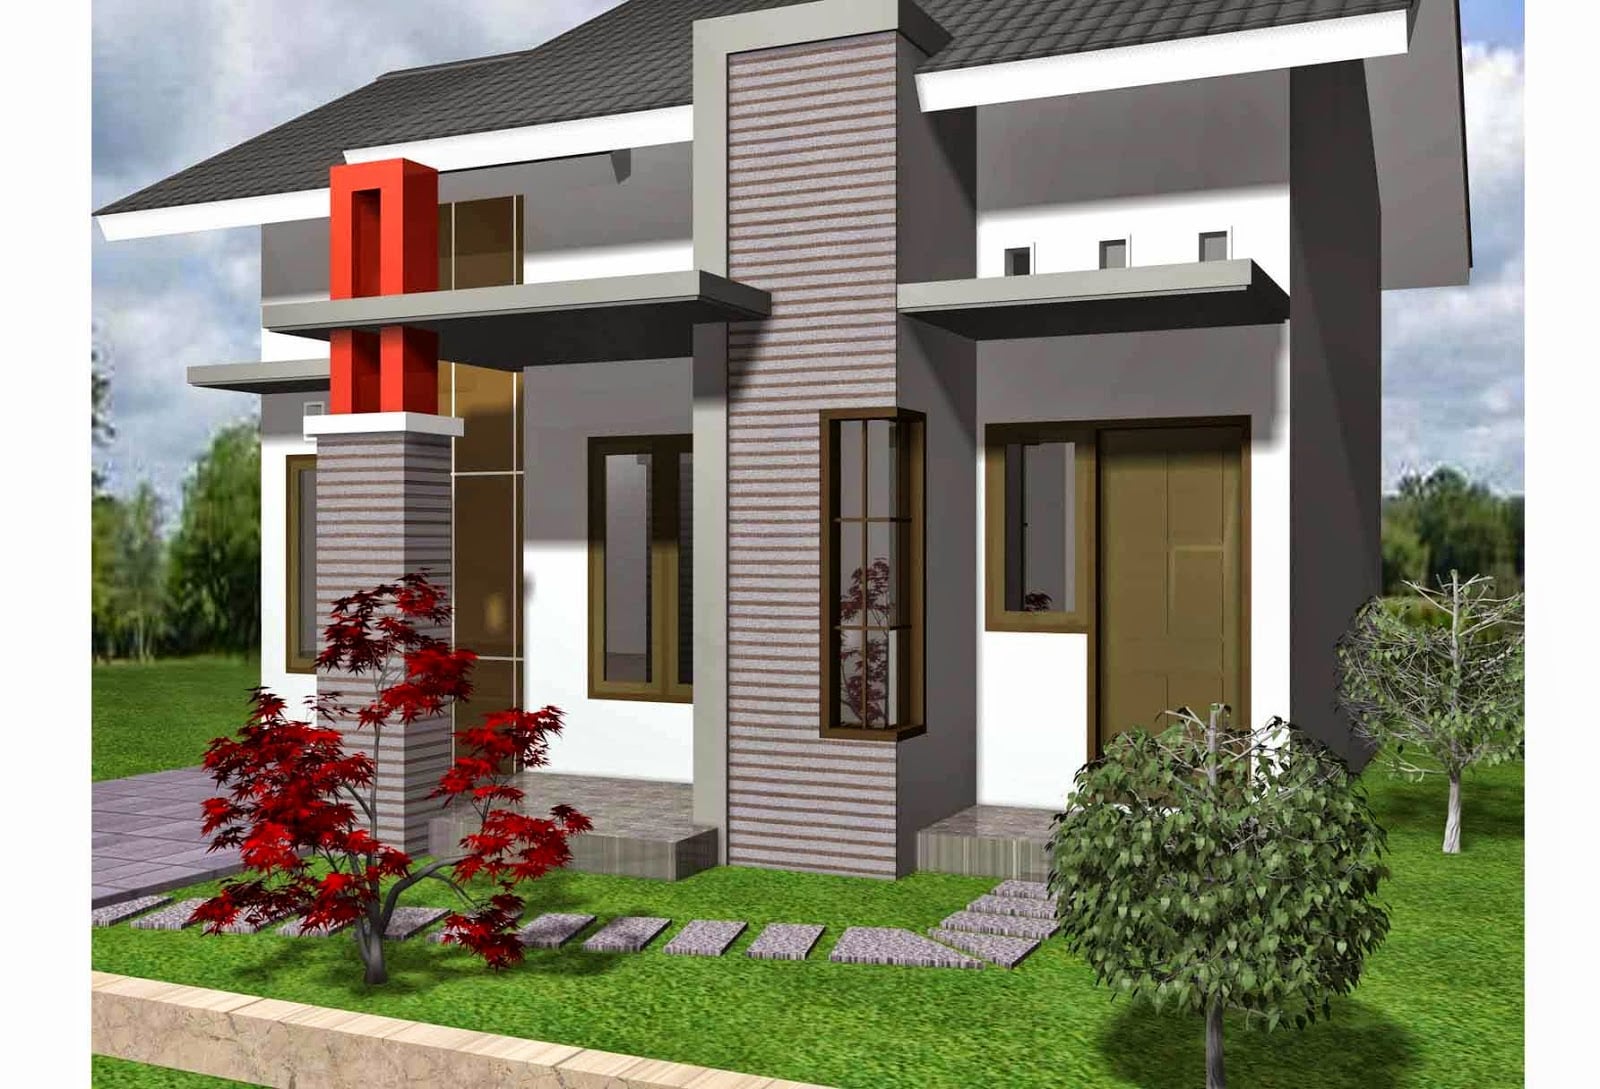 98 Gambar Desain Rumah Minimalis Modern 1 Lantai 2020 Paling